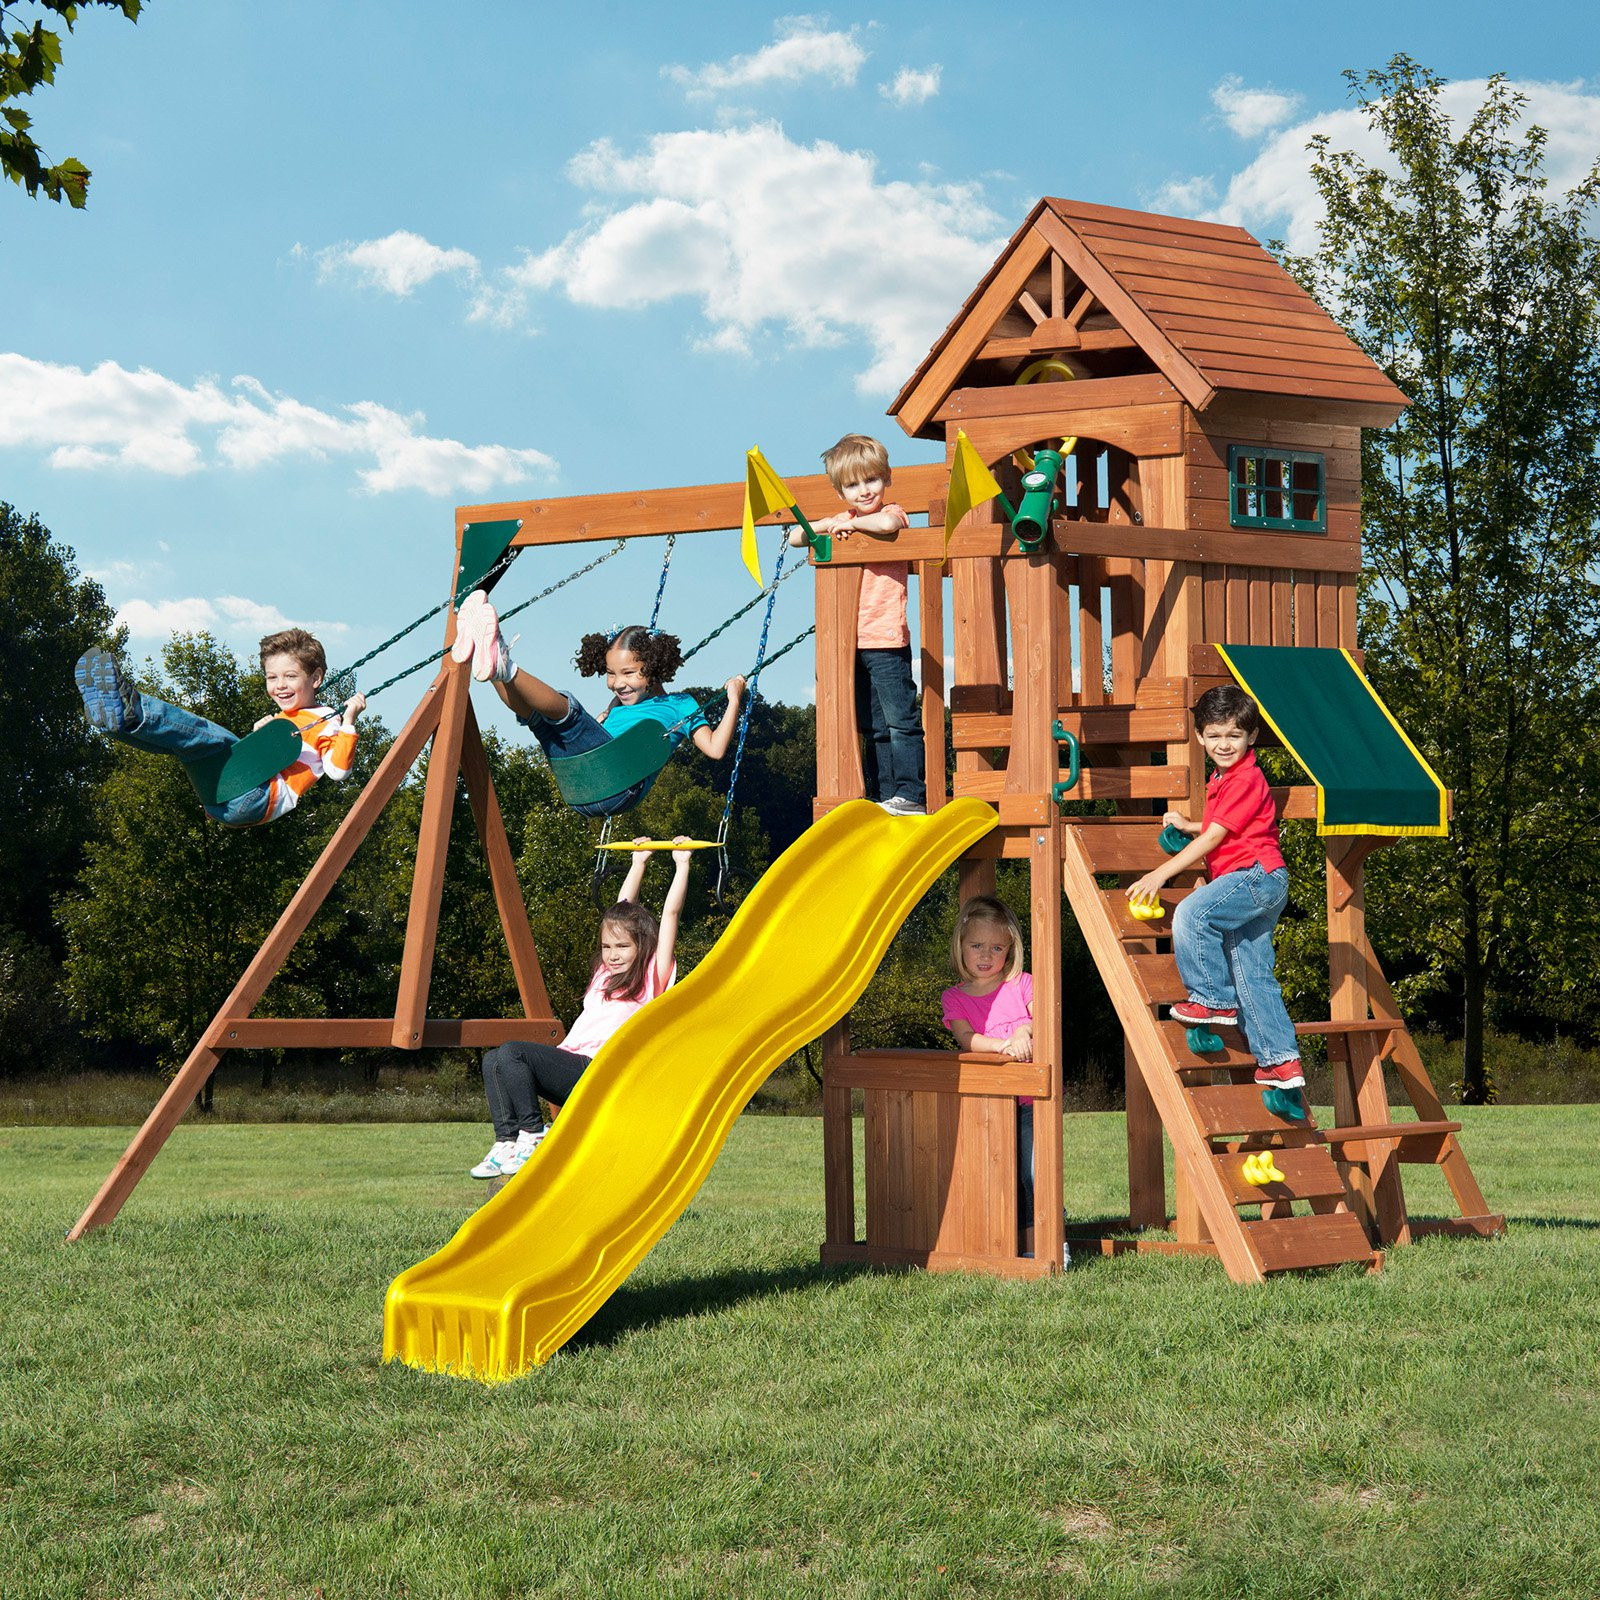 Kids Swing And Slide Set
 Swing N Slide Play Set Backyard Playset Outdoor Yard